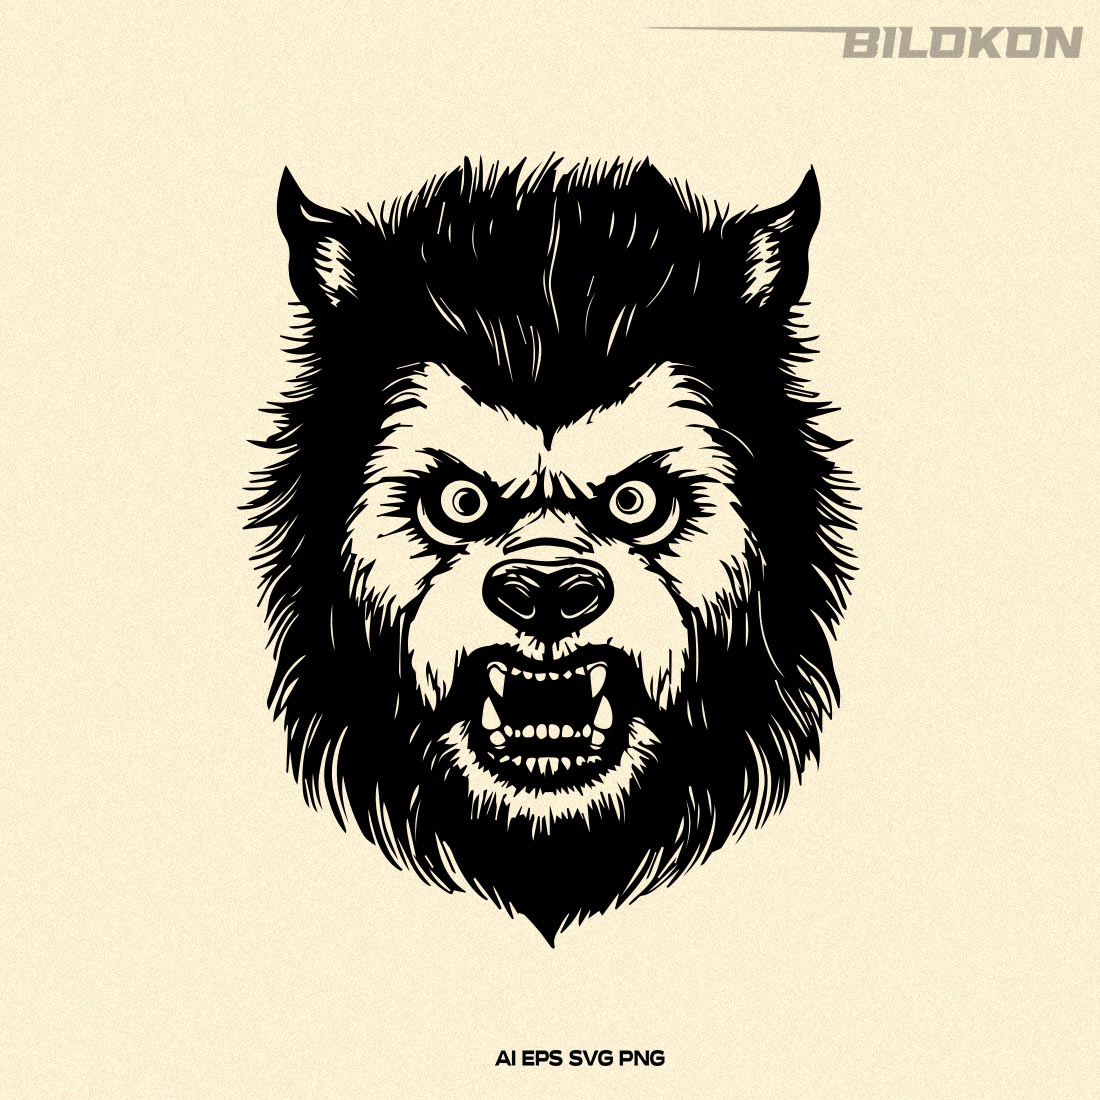 Werewolf head, Wolf man head, Halloween SVG Design cover image.